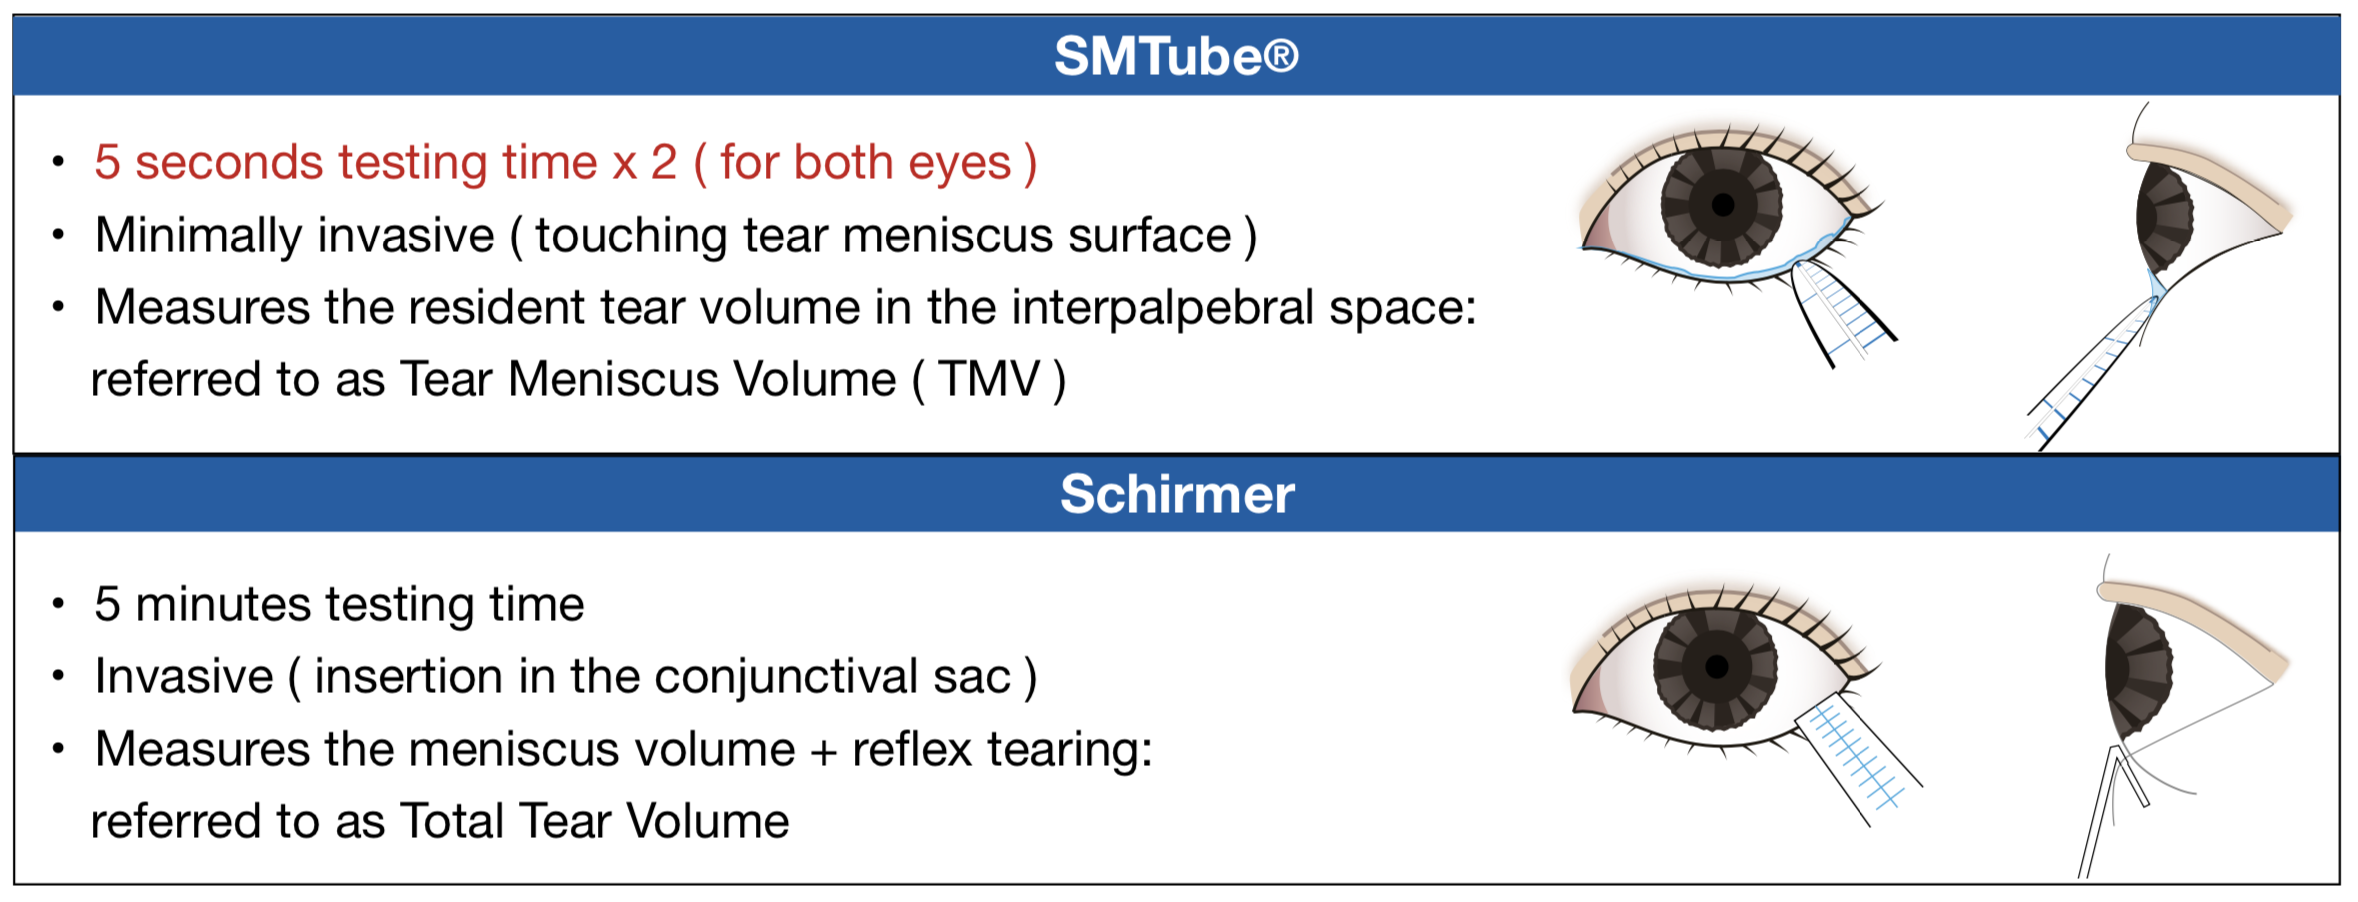 Schirmer - SMTube Test Comparison